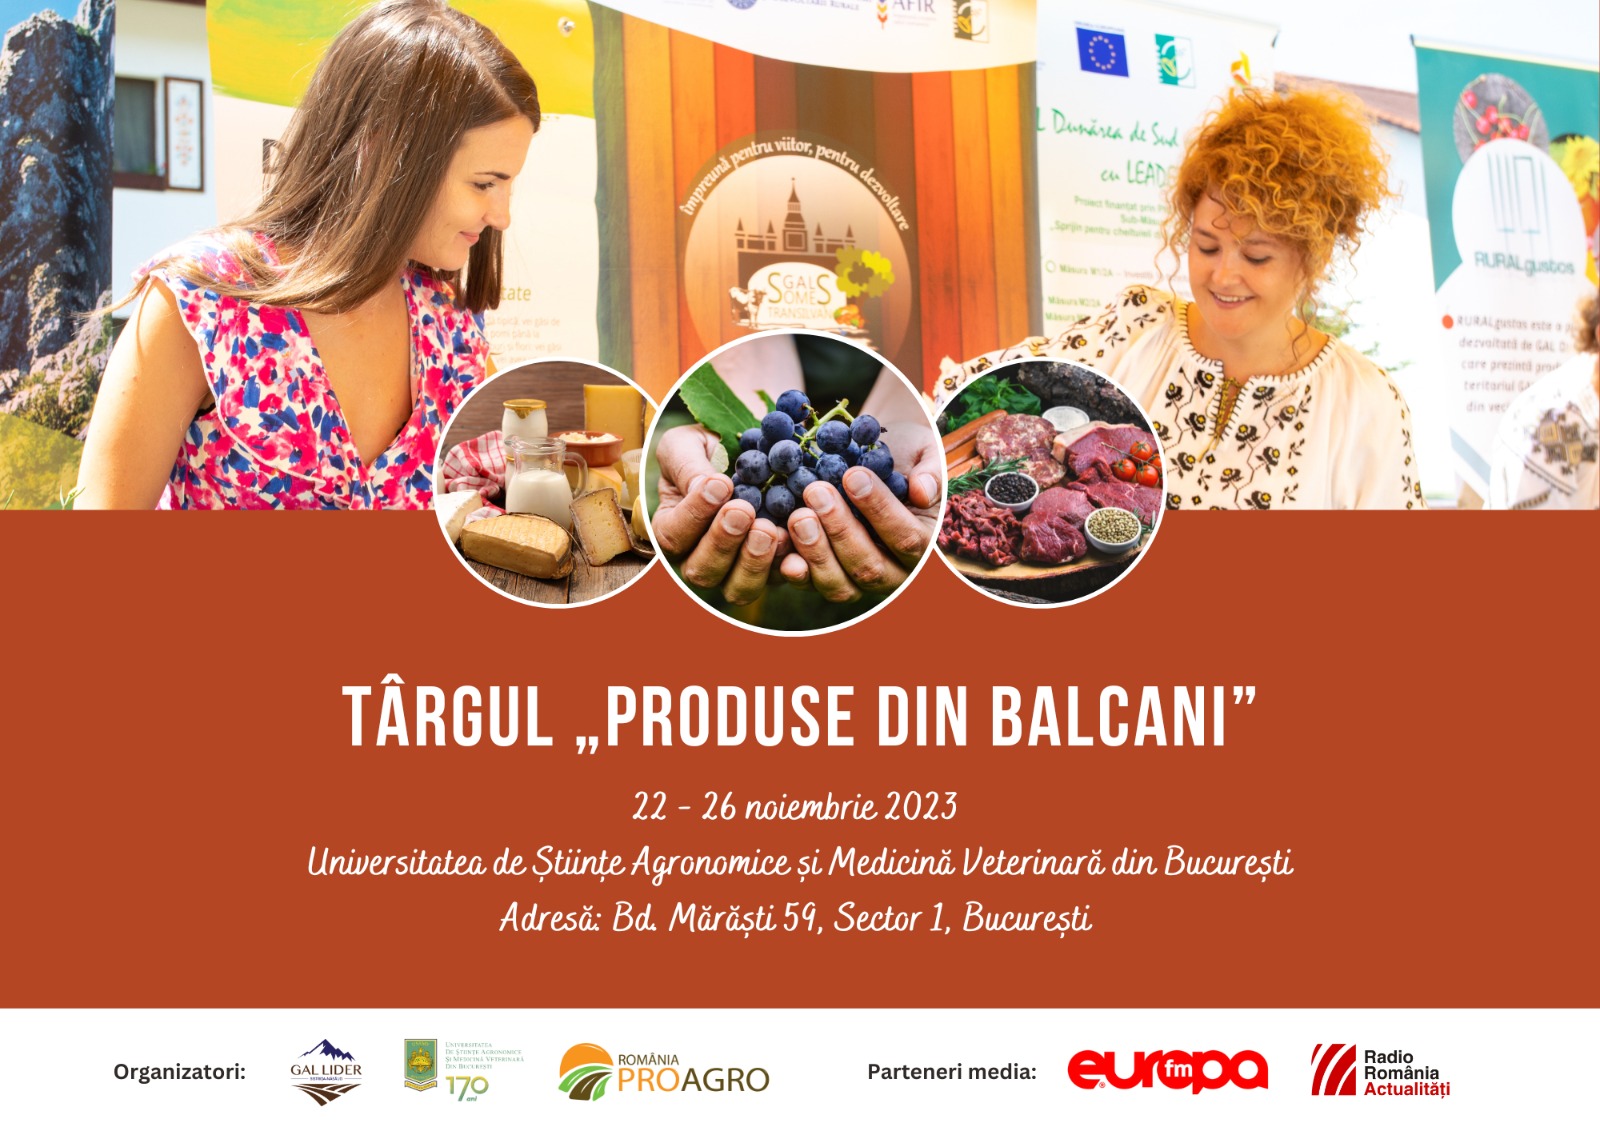 Târgul Produse din Balcani vine în campusul universitar Agronomie-Herăstrău între 22-26 noiembrie 2023, cu peste 80 de producători de bunătăți agroalimentare tradiționale